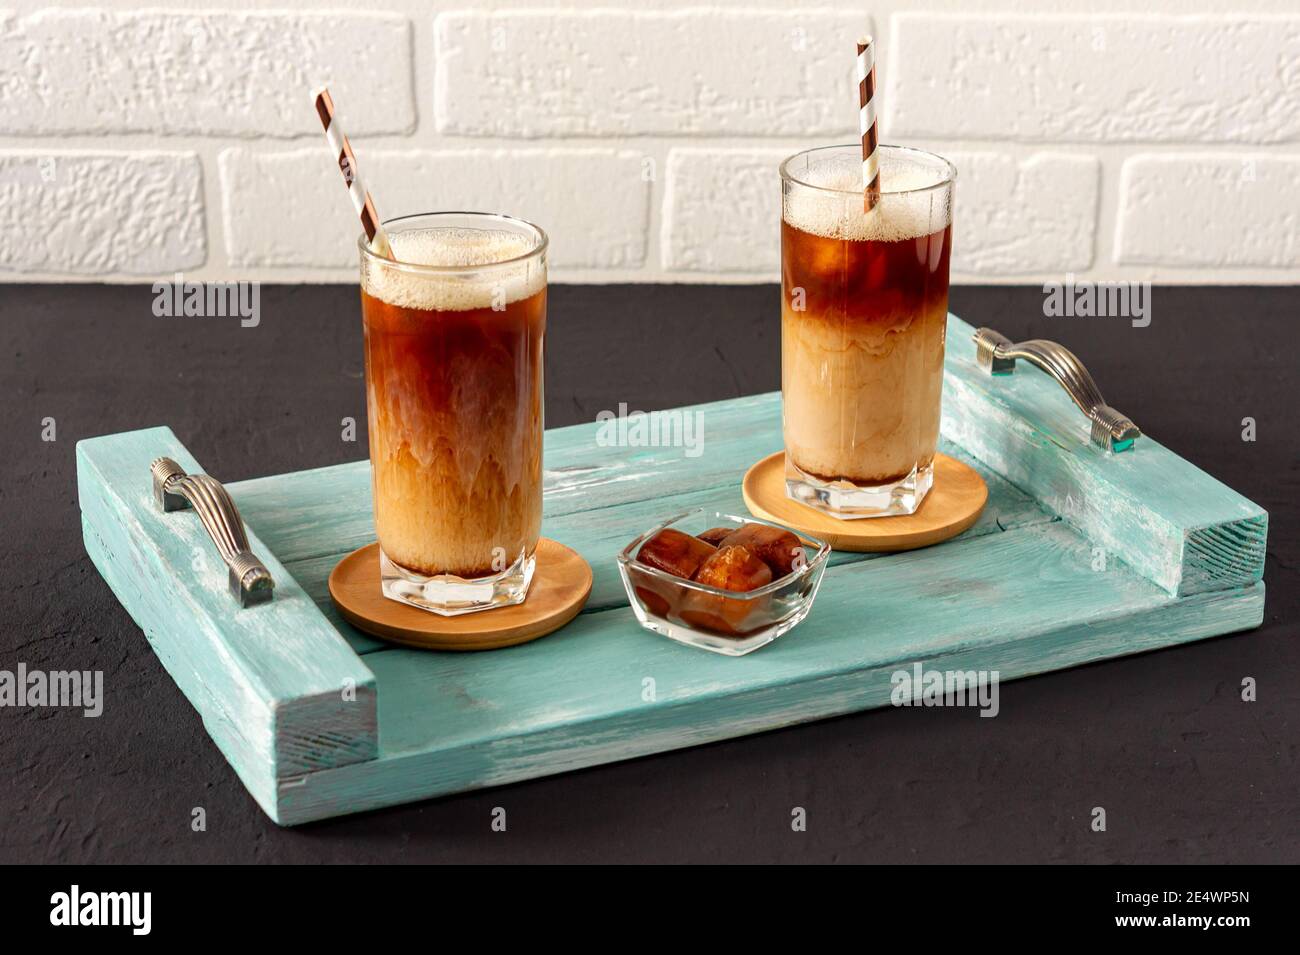 Un café glacé sur un plateau en bois avec de la crème versée dans celui-ci montrant la texture et l'aspect rafraîchissant de la boisson. Banque D'Images